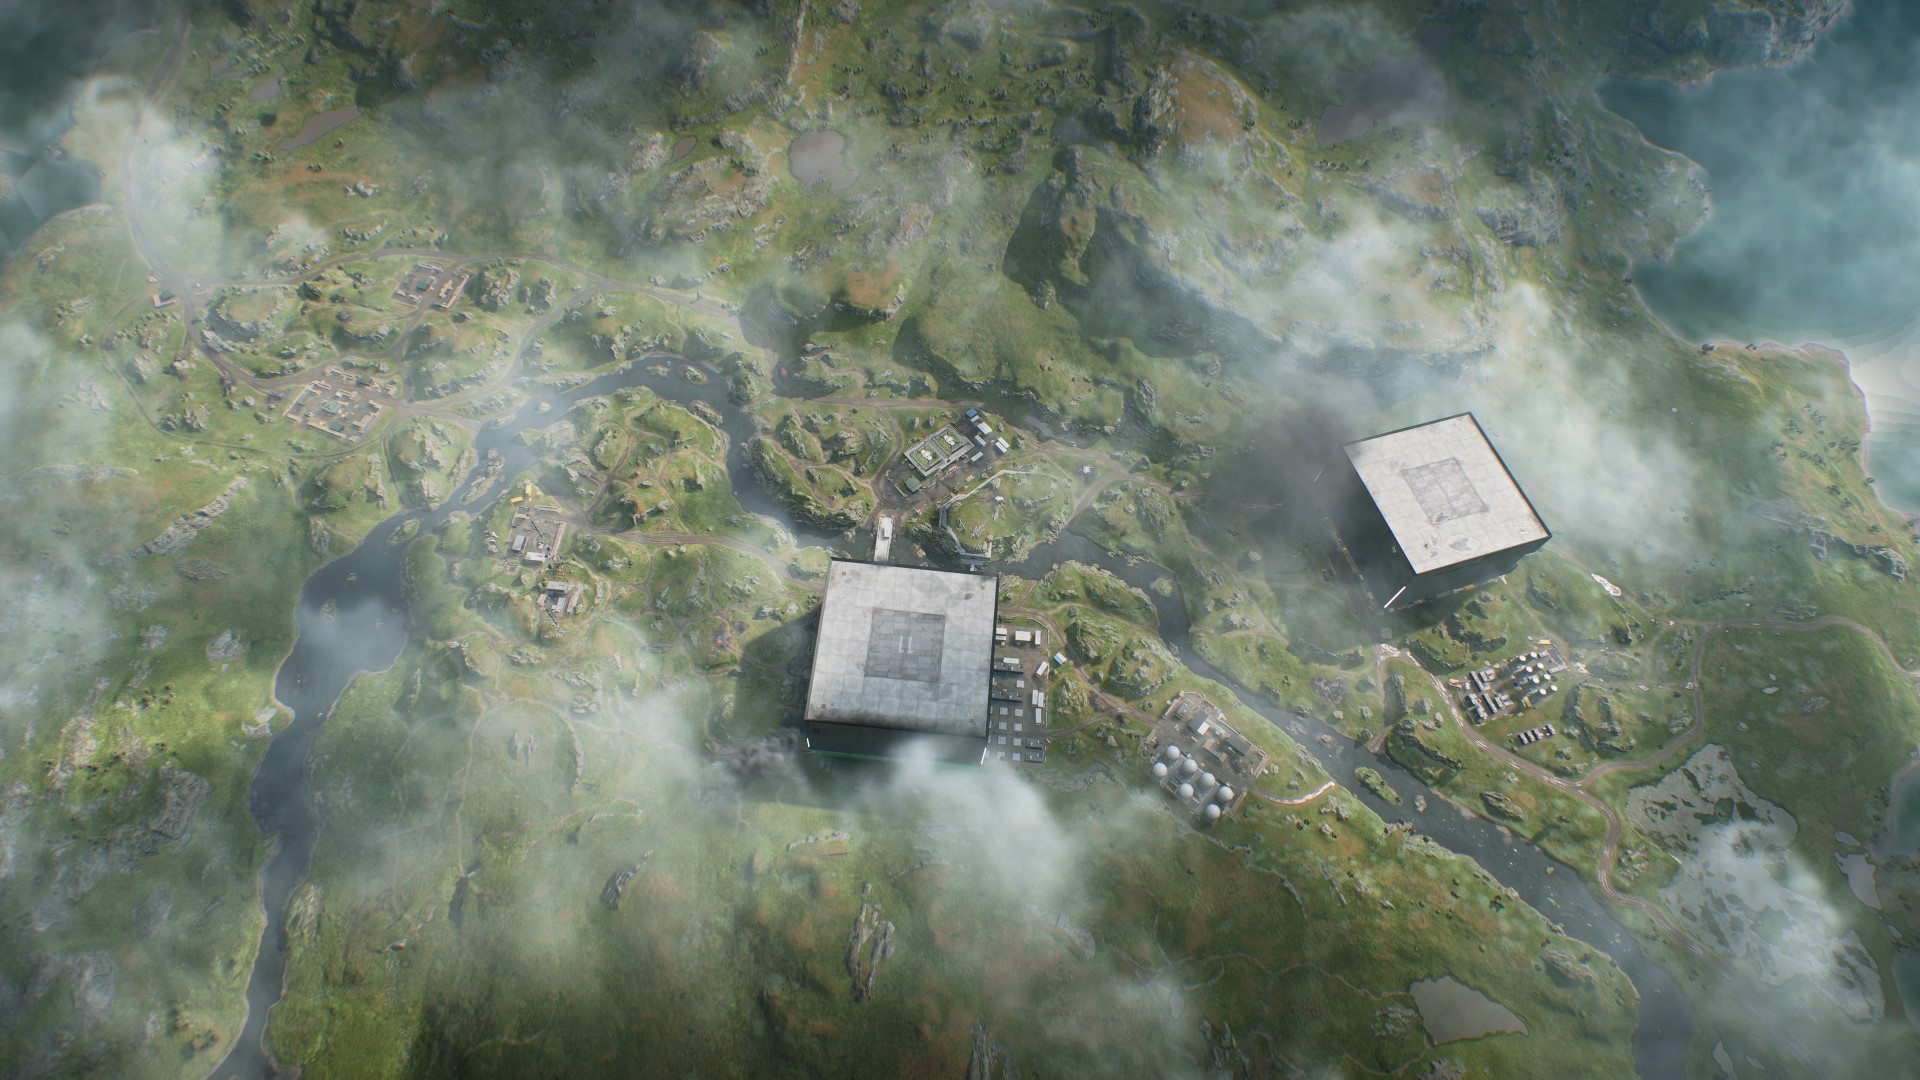 Pratique de la nouvelle carte de Battlefield 2042 Saison 3 : Une vue aérienne de la carte Fer de lance, avec deux grands bâtiments carrés de chaque côté d'un ruisseau qui traverse la campagne rocheuse suédoise